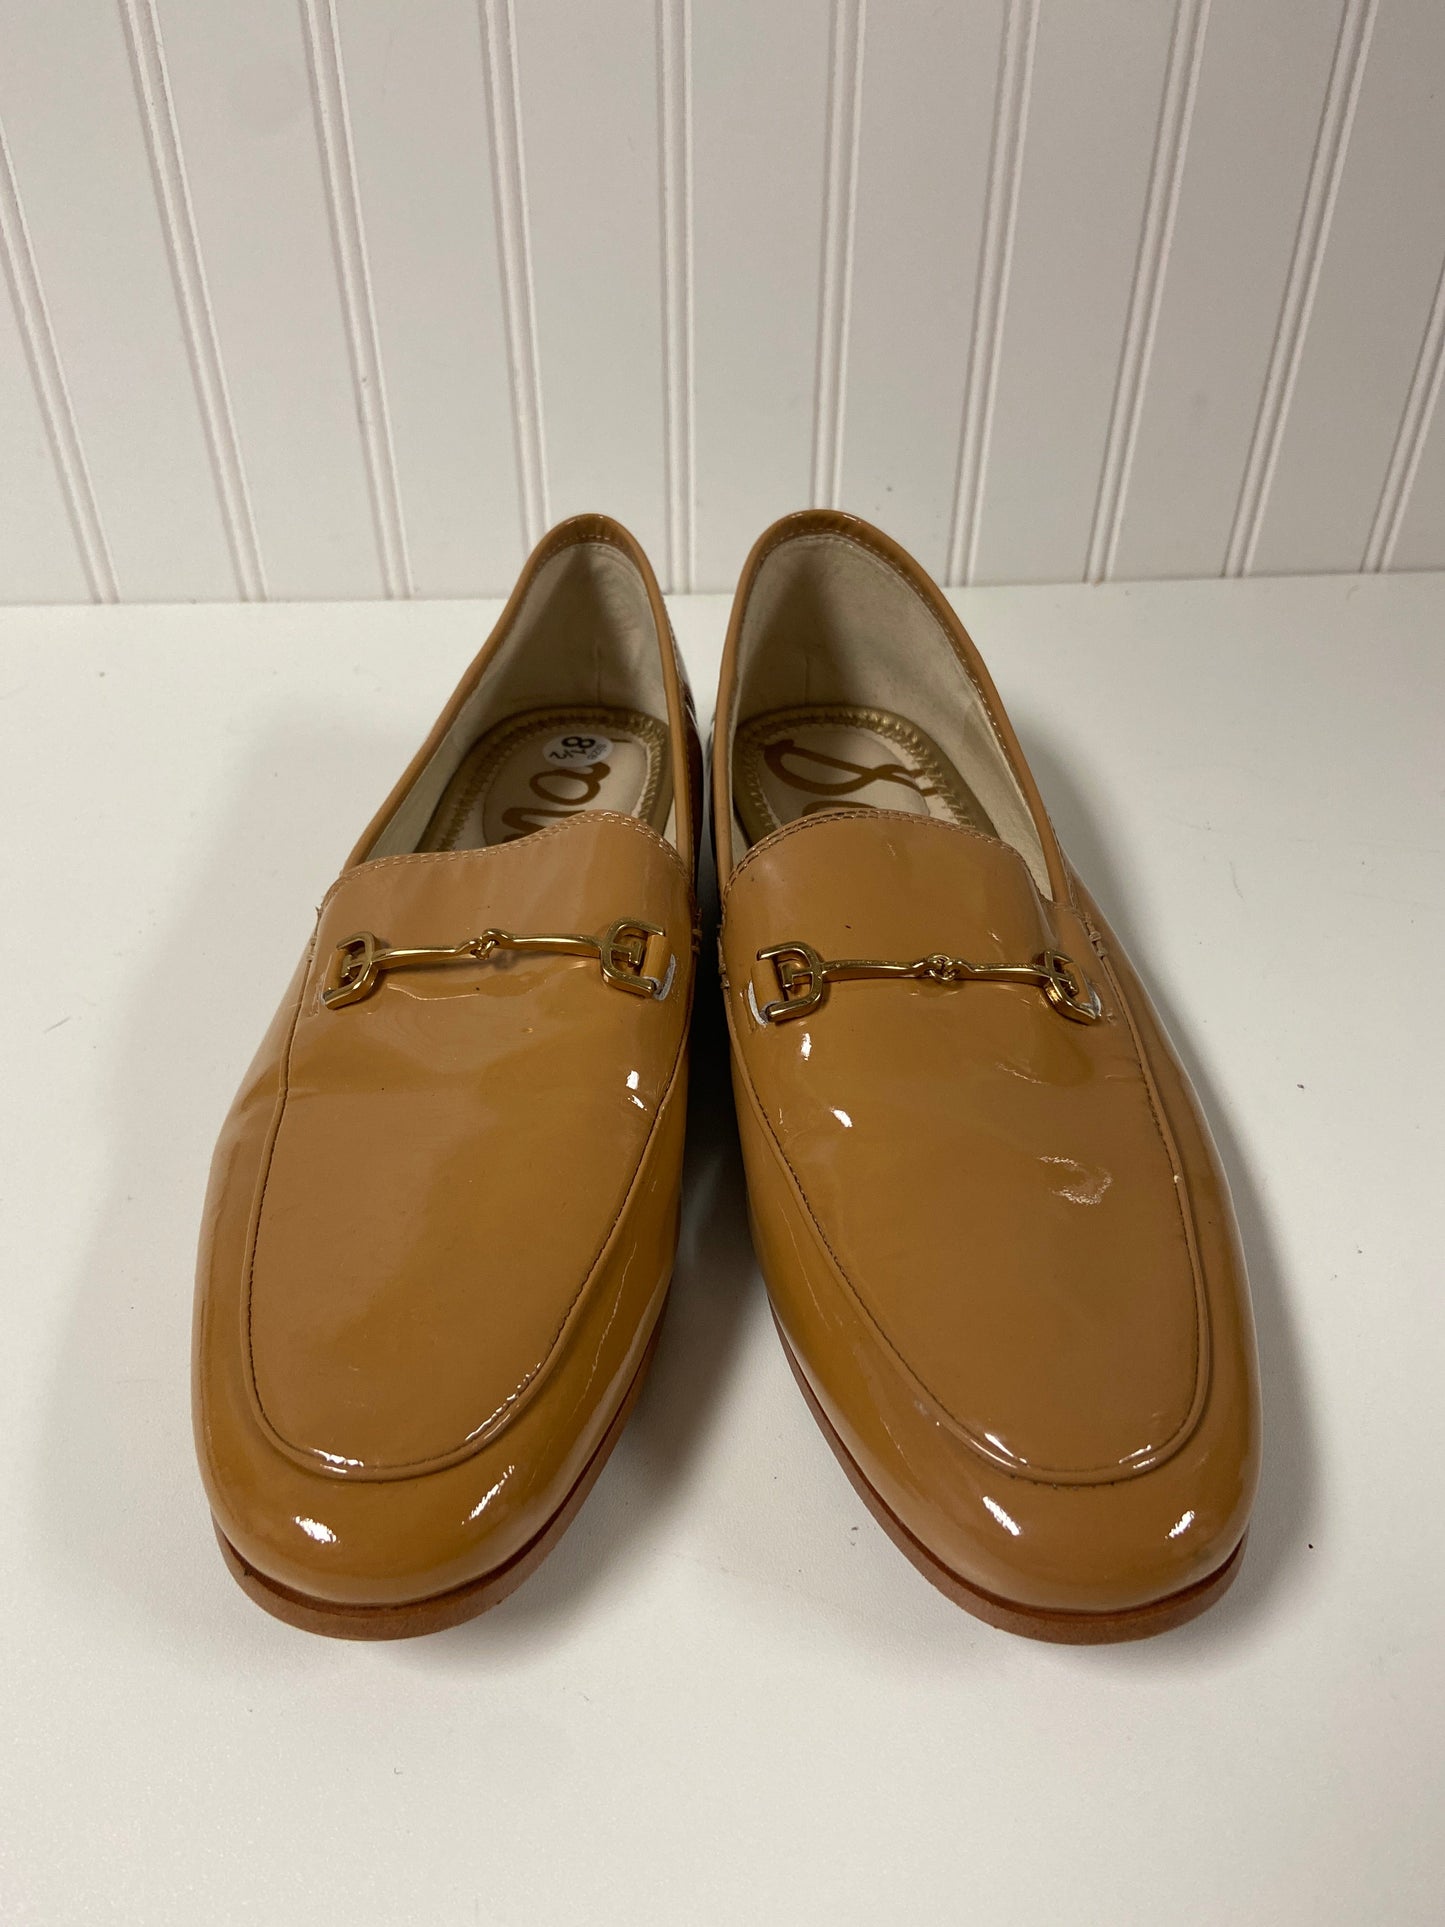 Tan Shoes Flats Sam Edelman, Size 8.5